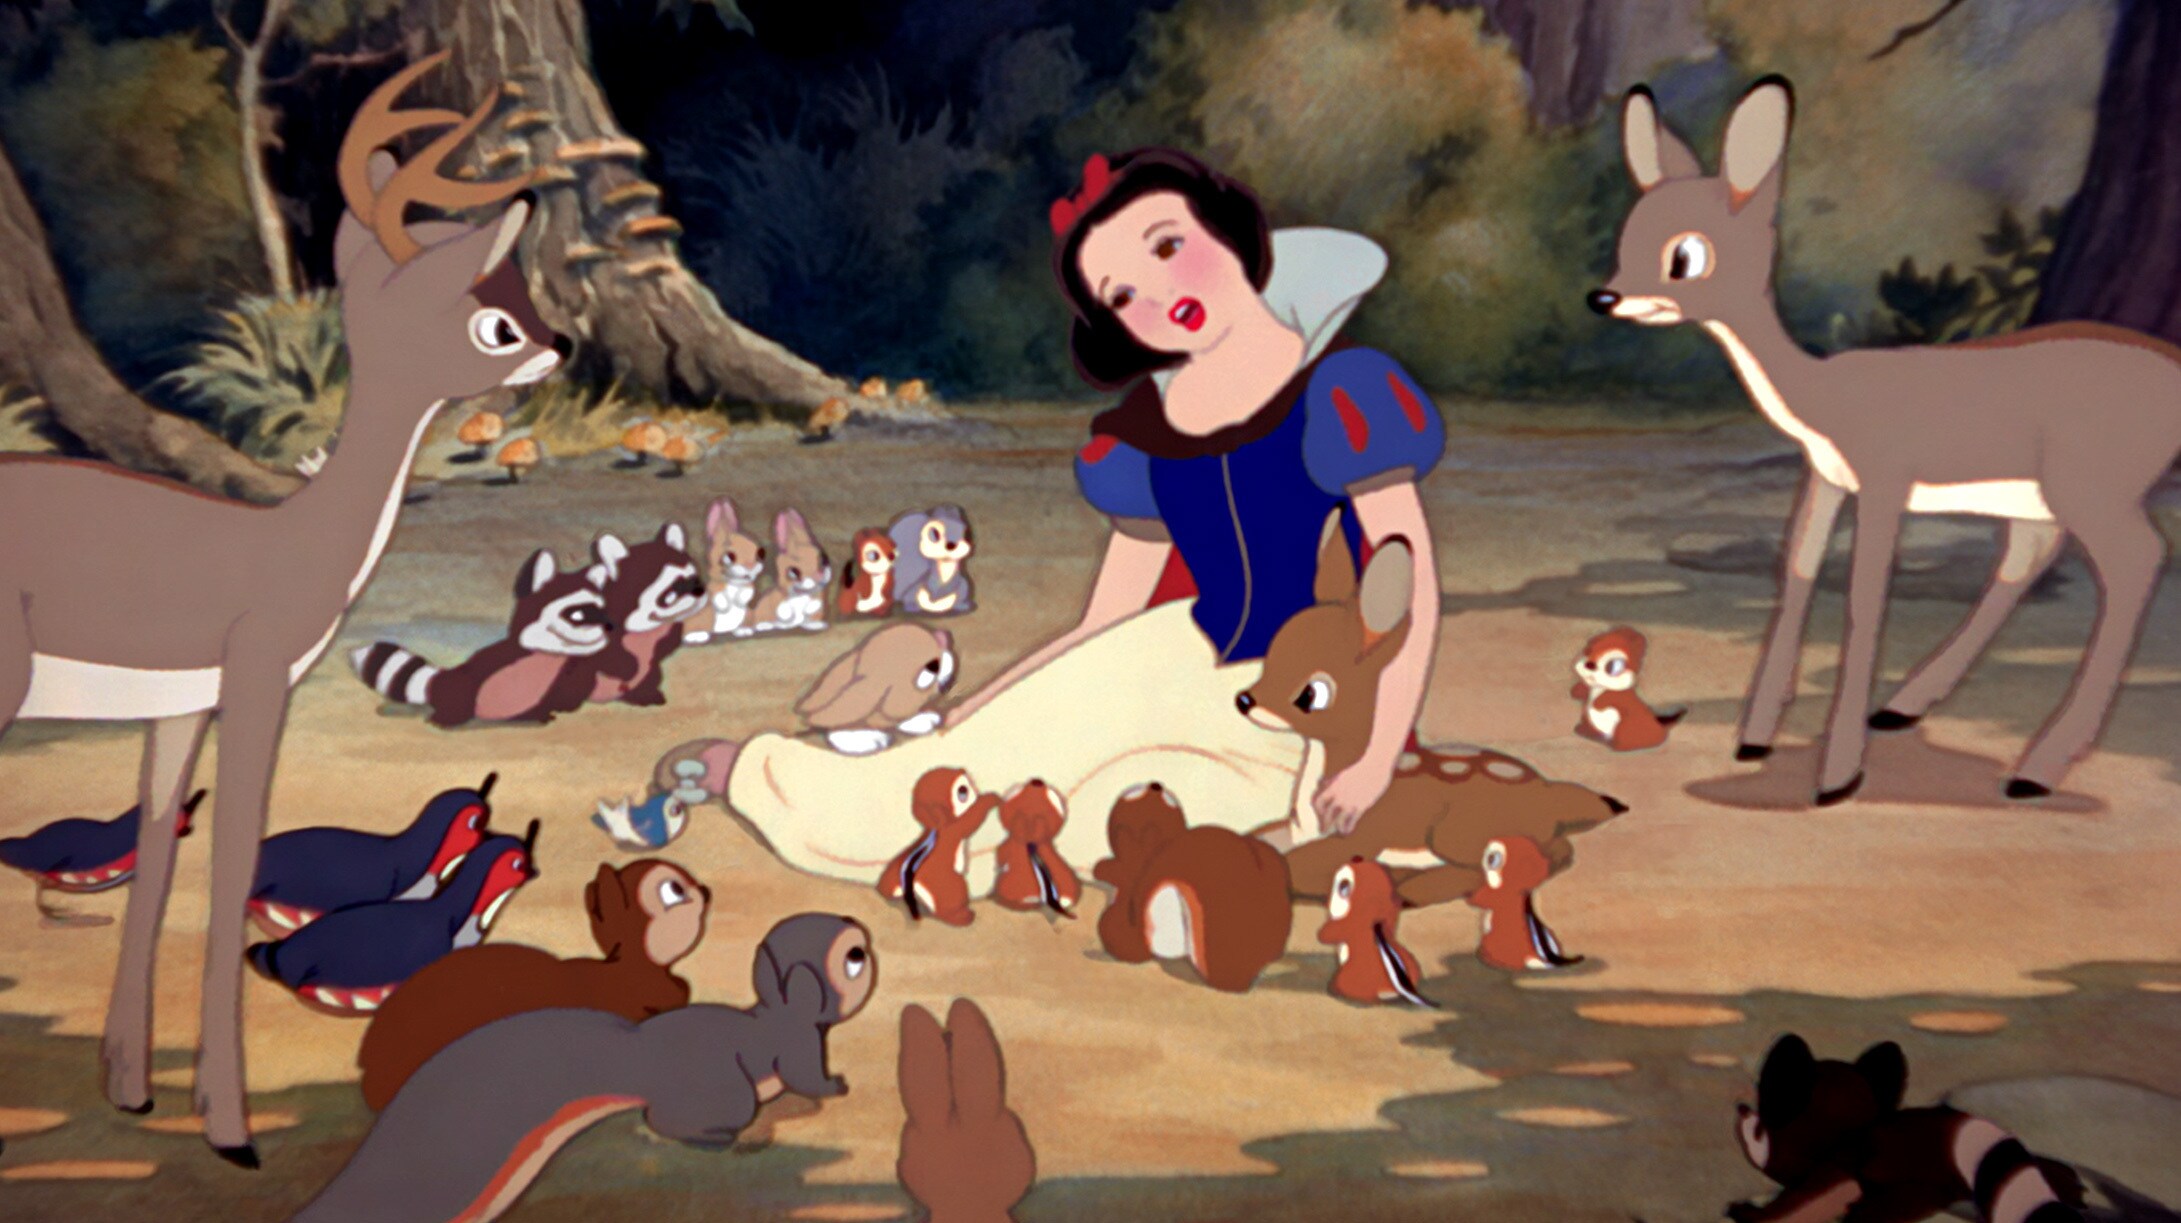 Snow White Photo Gallery   Disney Princess